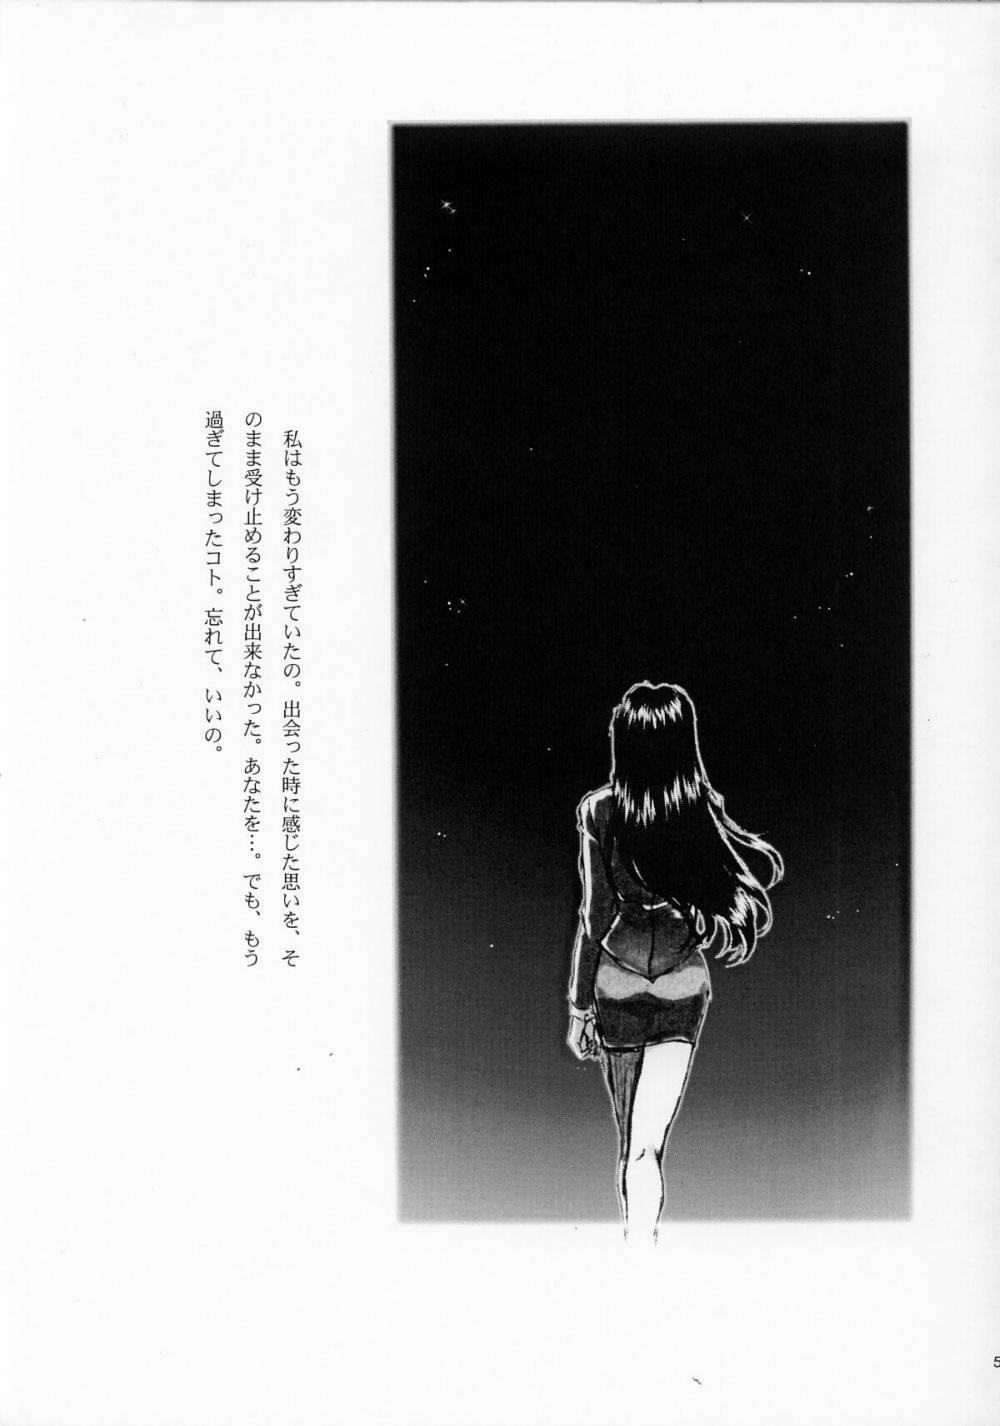 Blowjob [TSK] Mai Hime ~Karen~ 1 Ichigo Ichie (Sakura Wars) - Sakura taisen Hotporn - Page 4